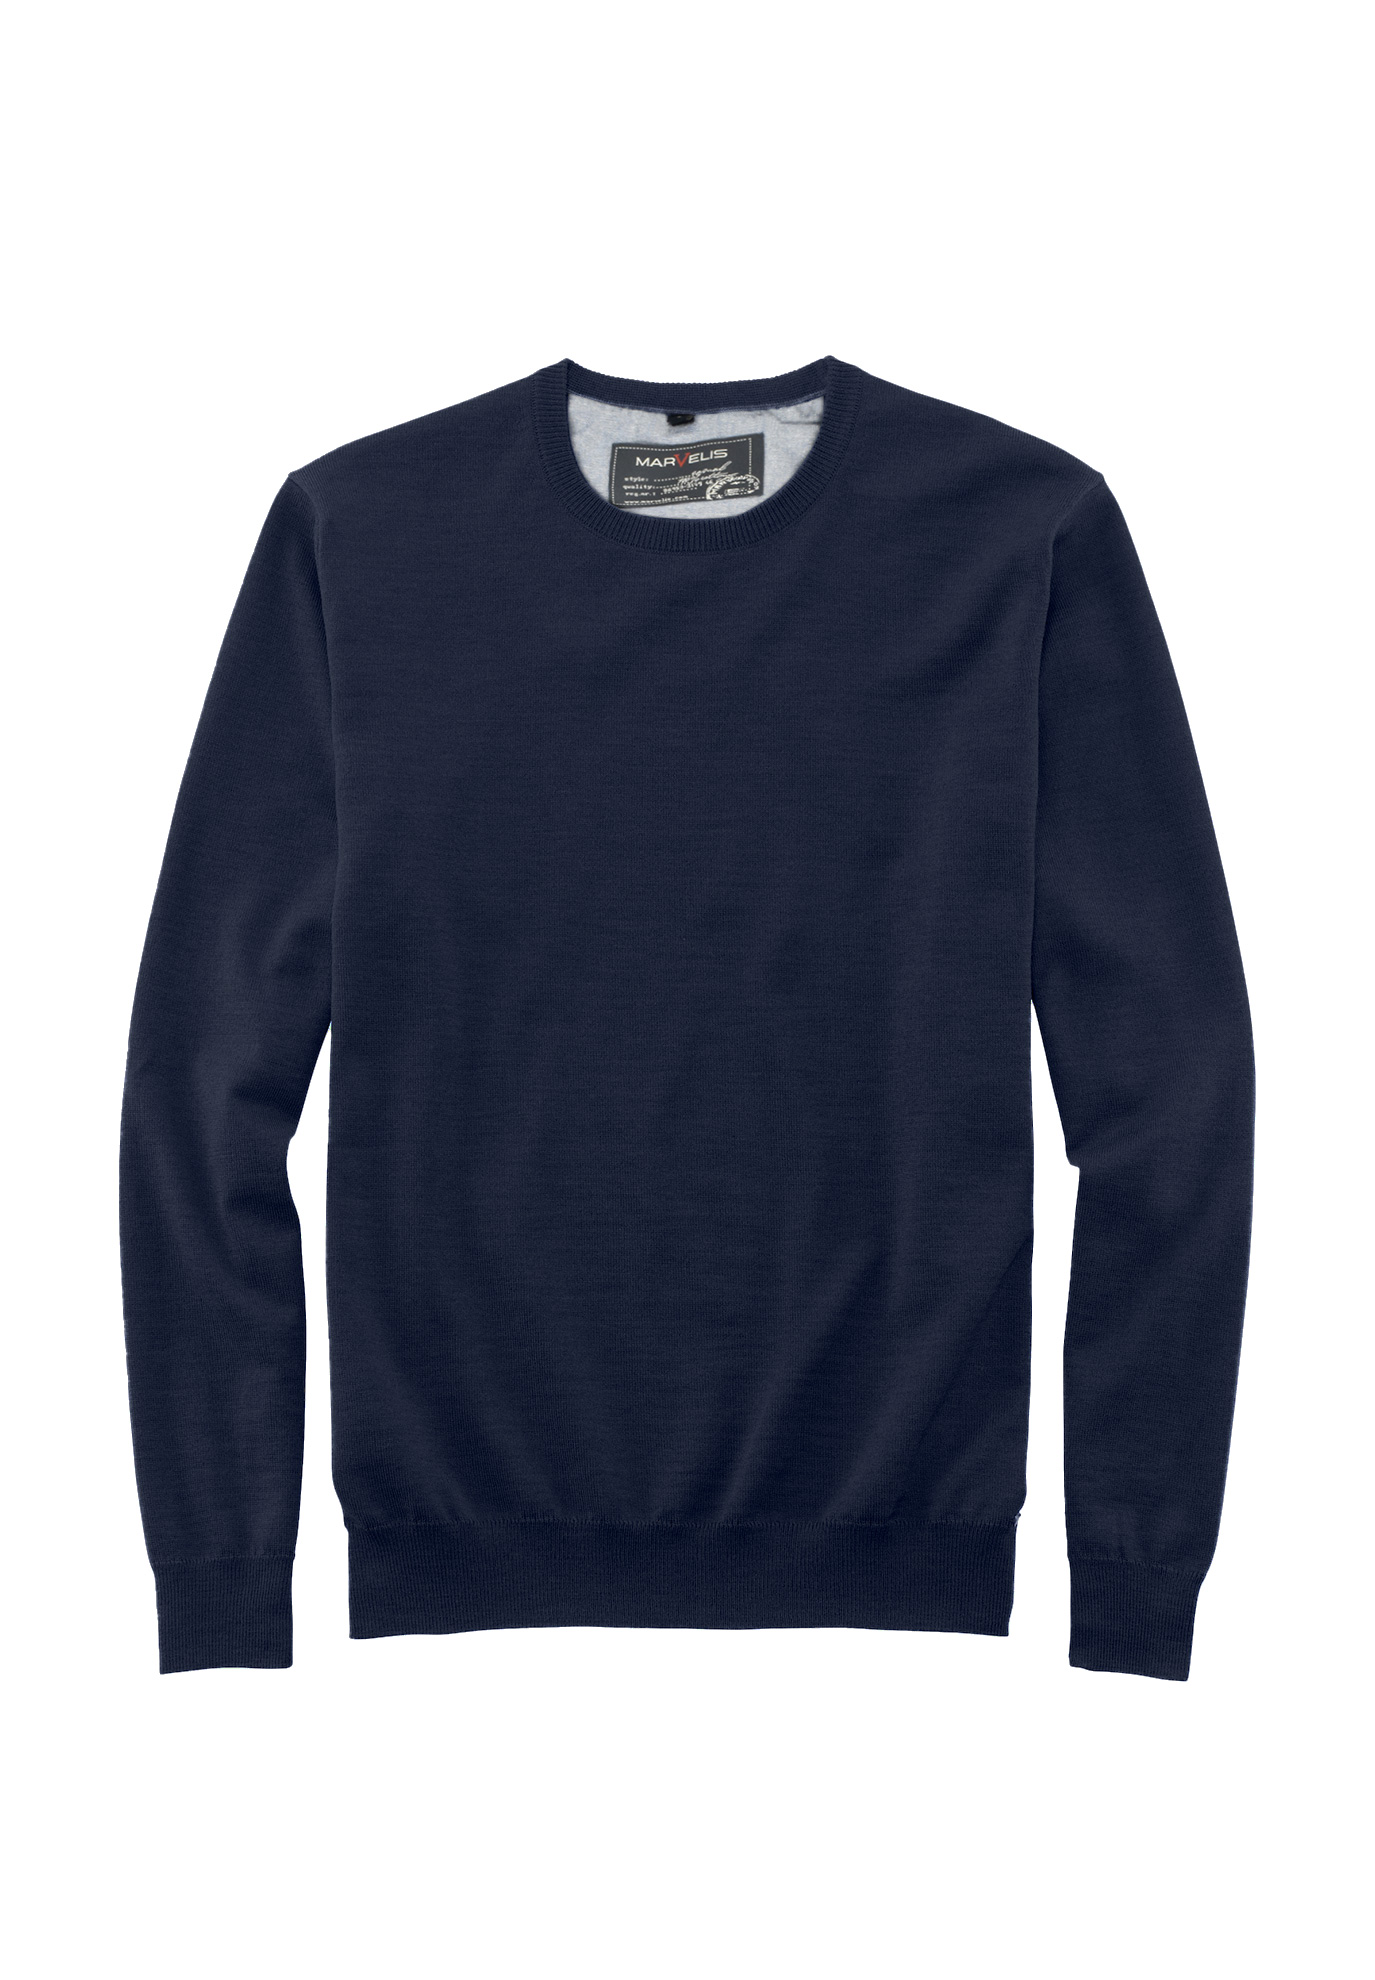 Пуловер MARVELIS, морской жакет на пуговицах marvelis marvelis размер xl цвет серый арт 63151660